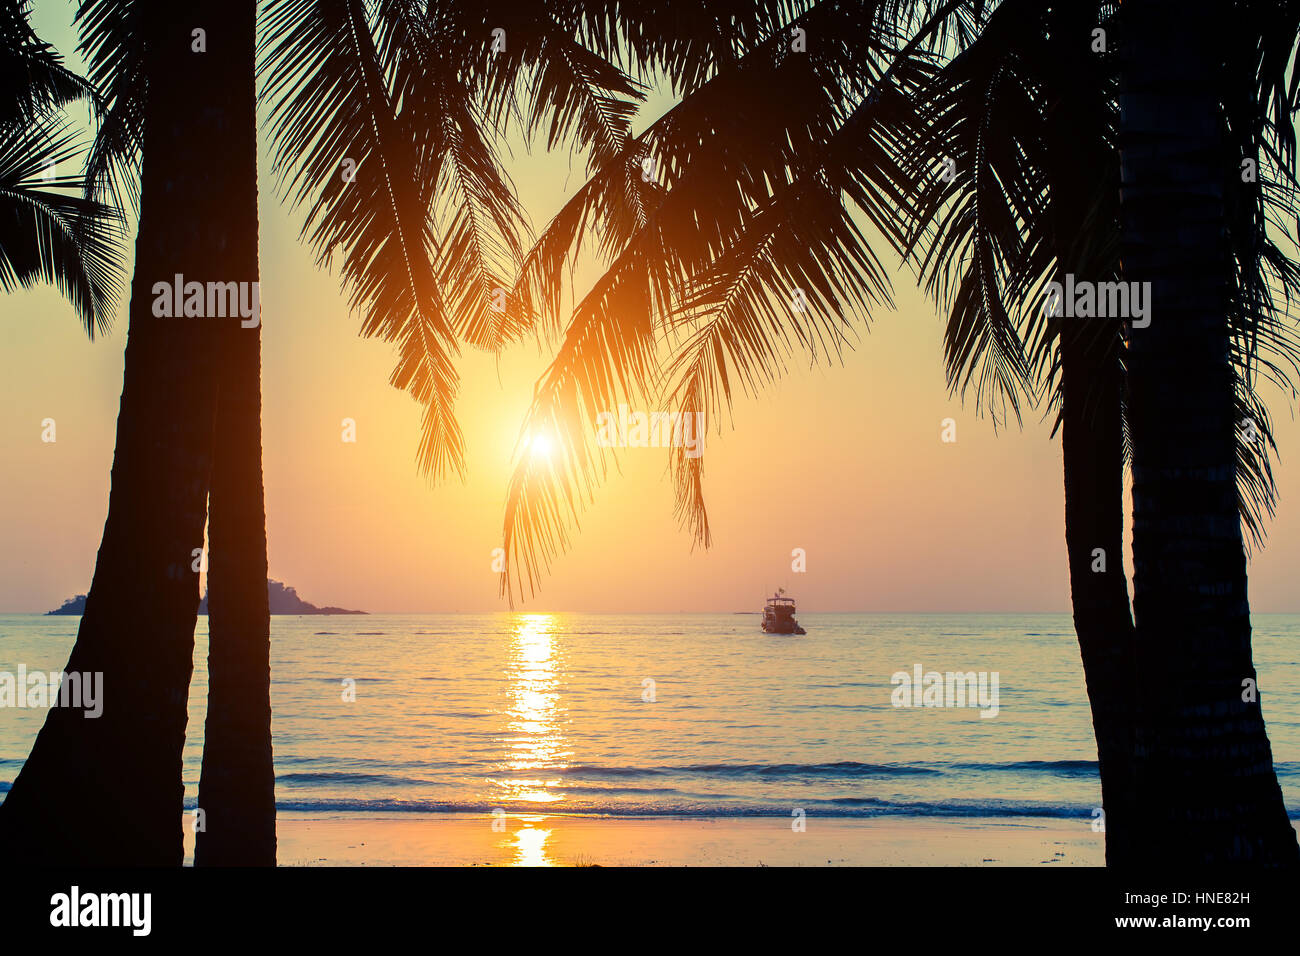 Magnifique coucher de soleil sur une plage tropicale à feuilles de palmier. Banque D'Images